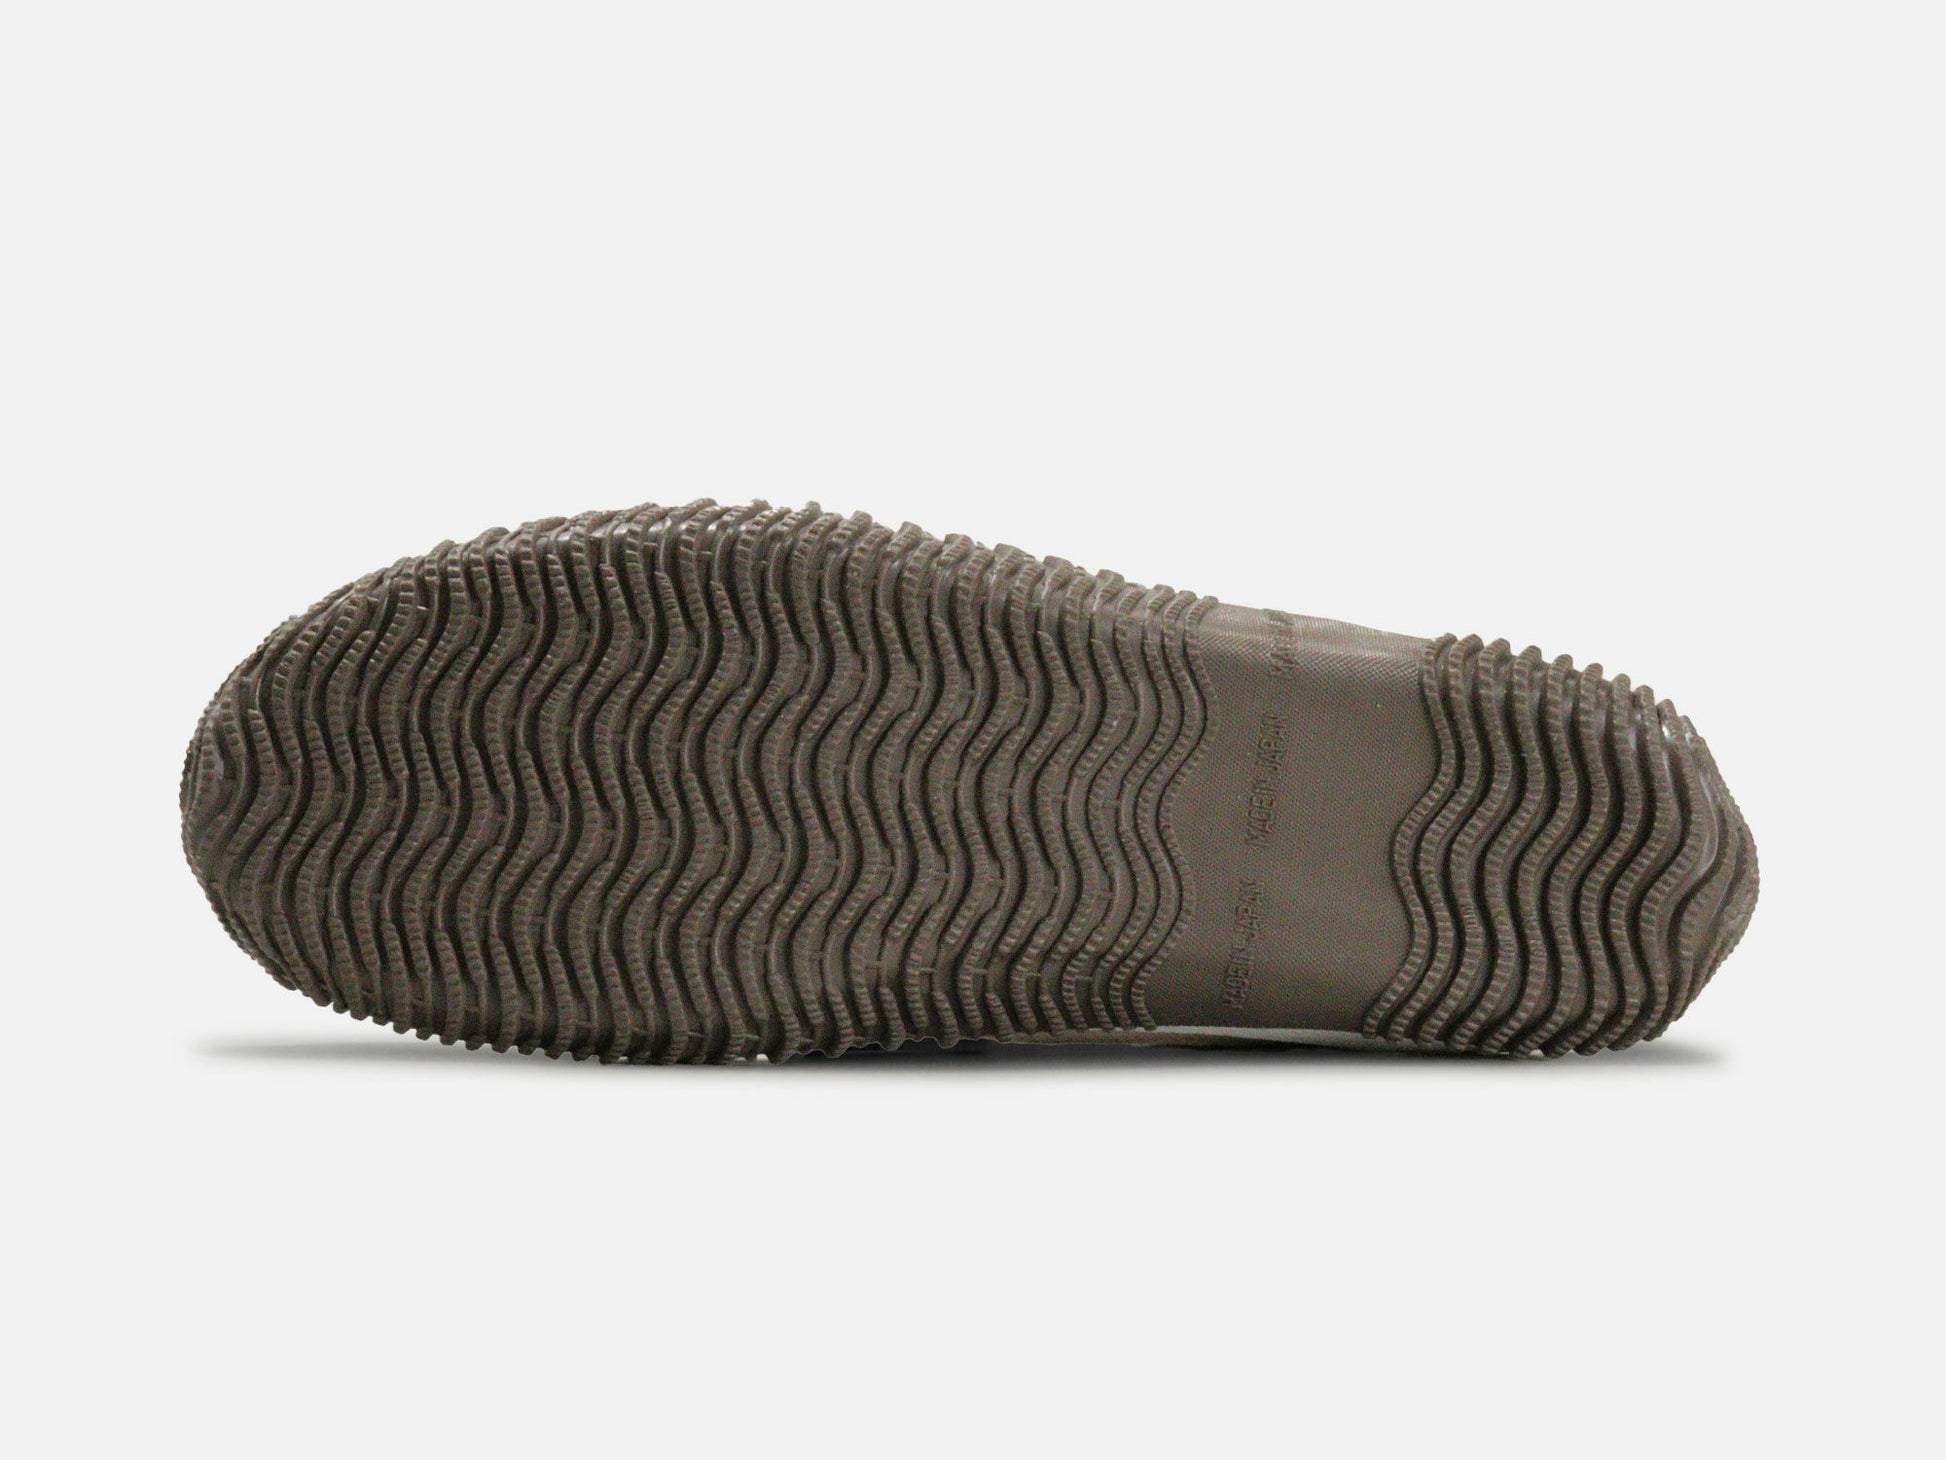 SPINGLE MOVEのスニーカー「SPM-618 Beige」の靴底の商品画像